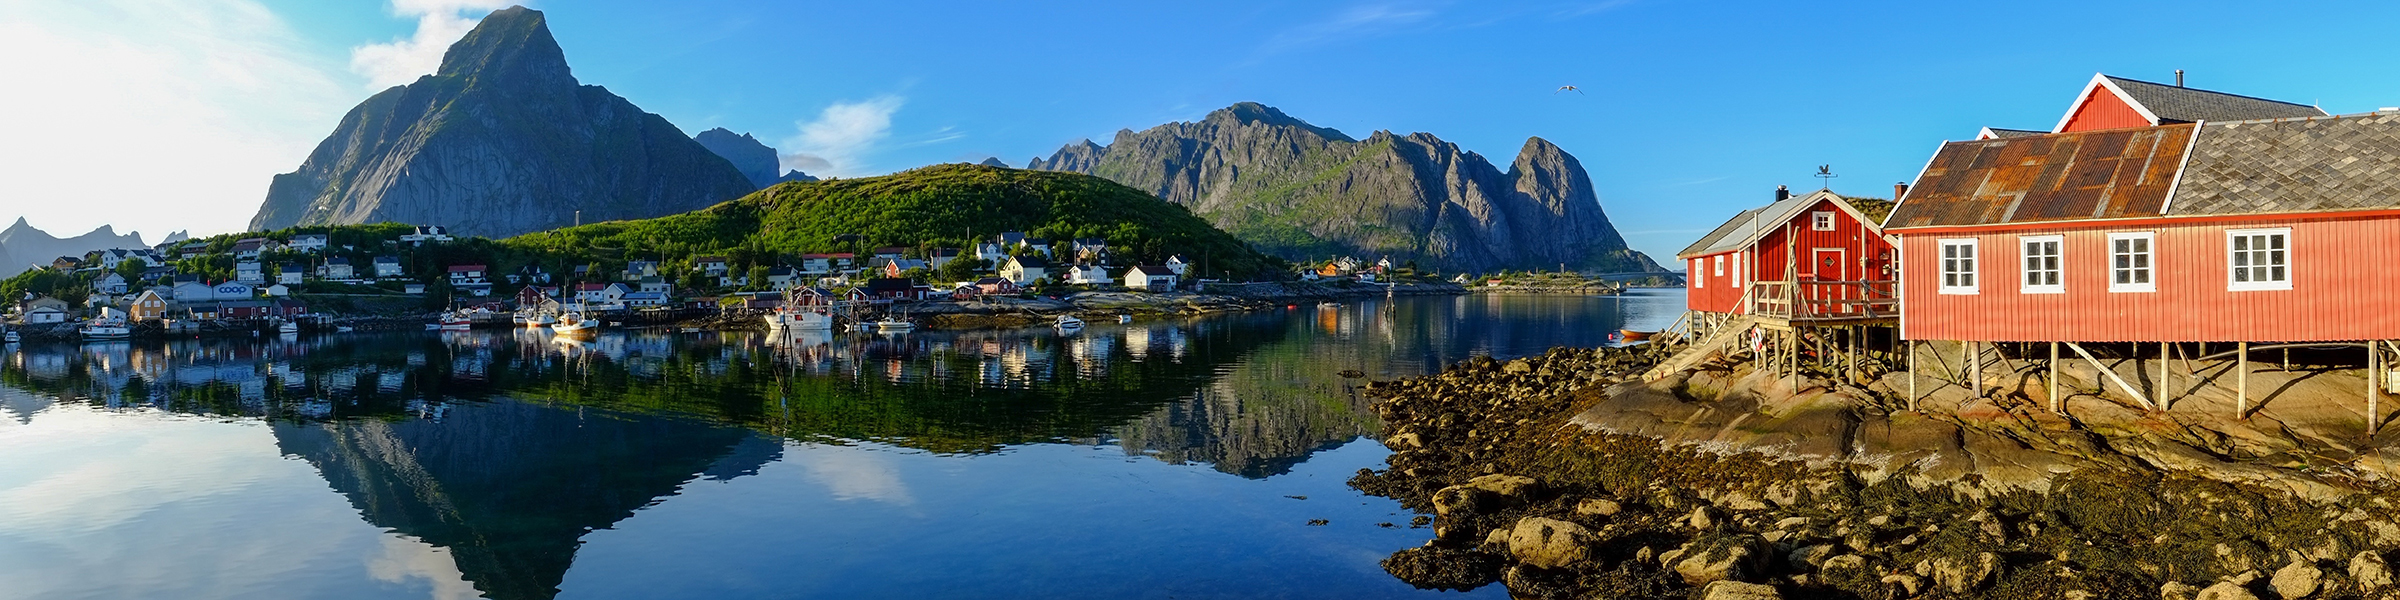 Norway Reine Fishing Village